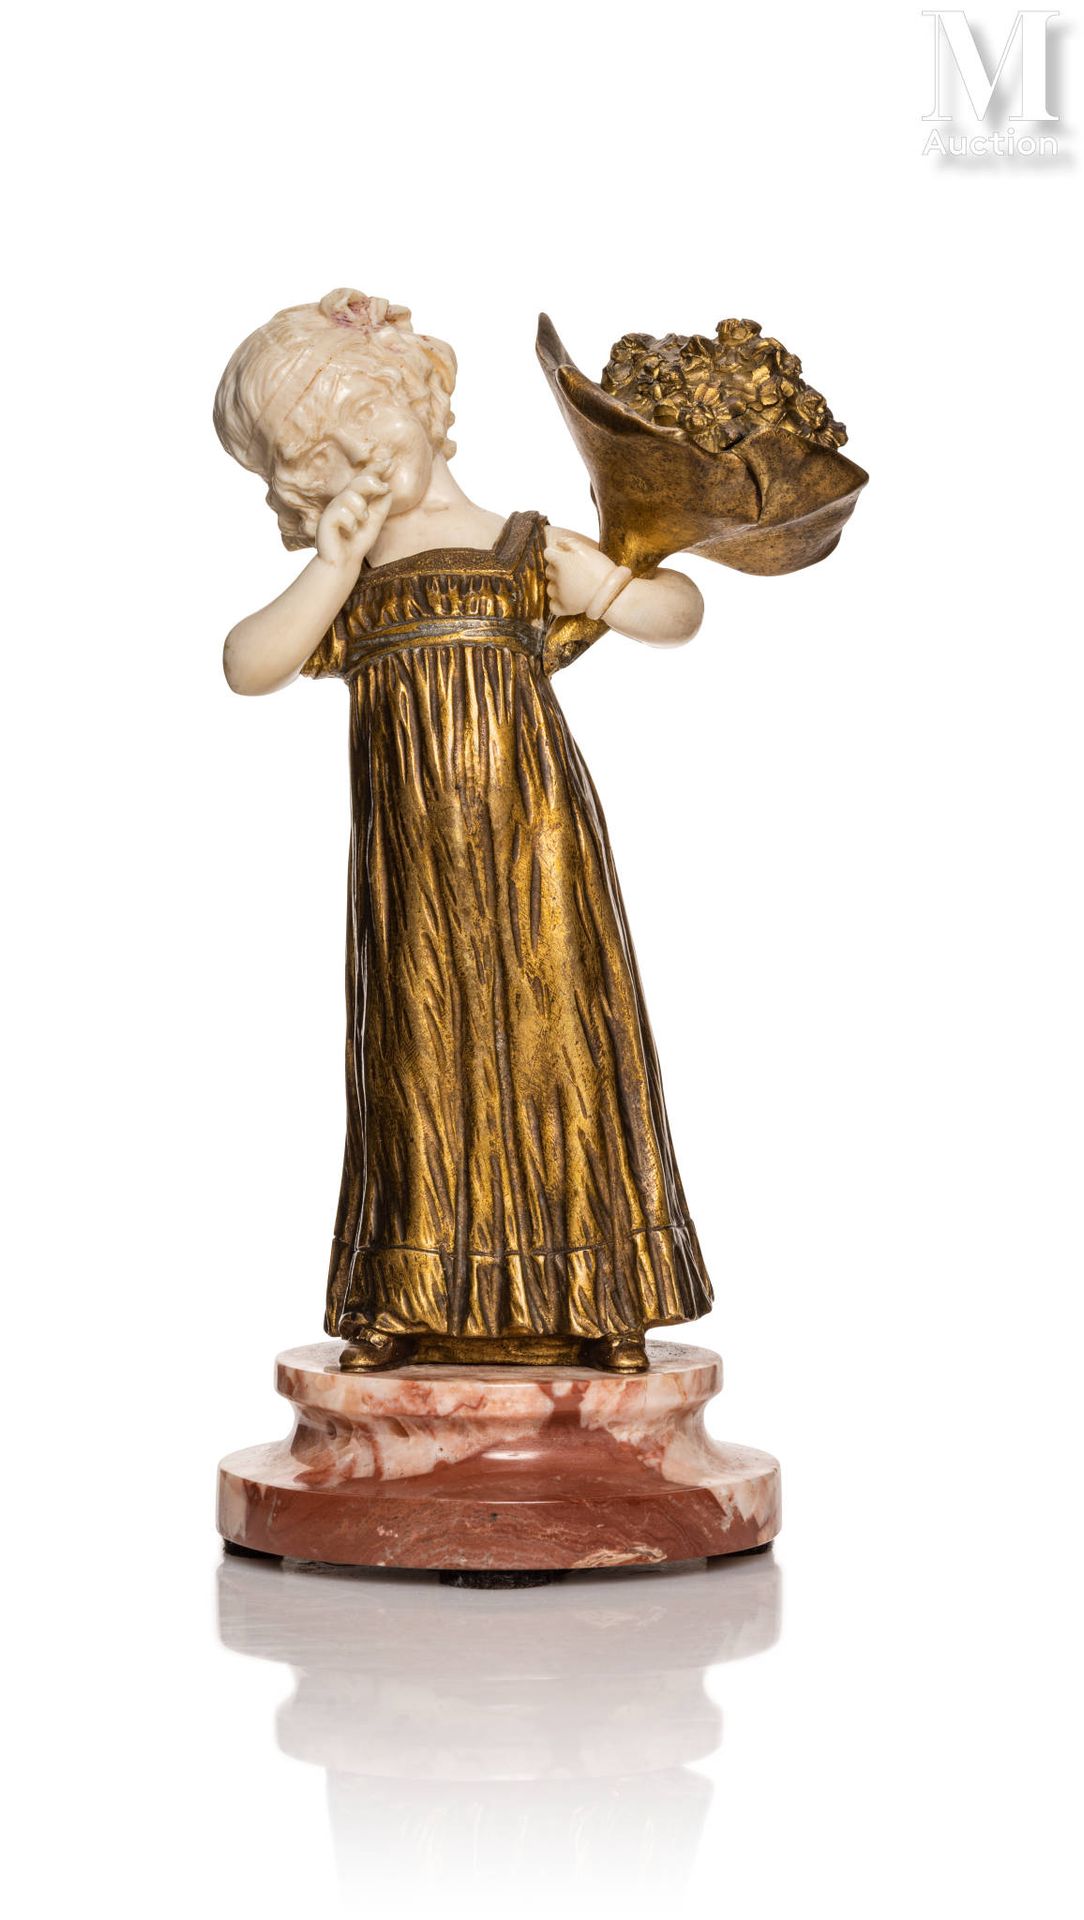 Affortunato GORI (1895 - 1925) "拿着花束的年轻女孩"。

鎏金青铜雕像，半身和手都是象牙雕刻。

圆形底座，有红色大理石台阶。
&hellip;